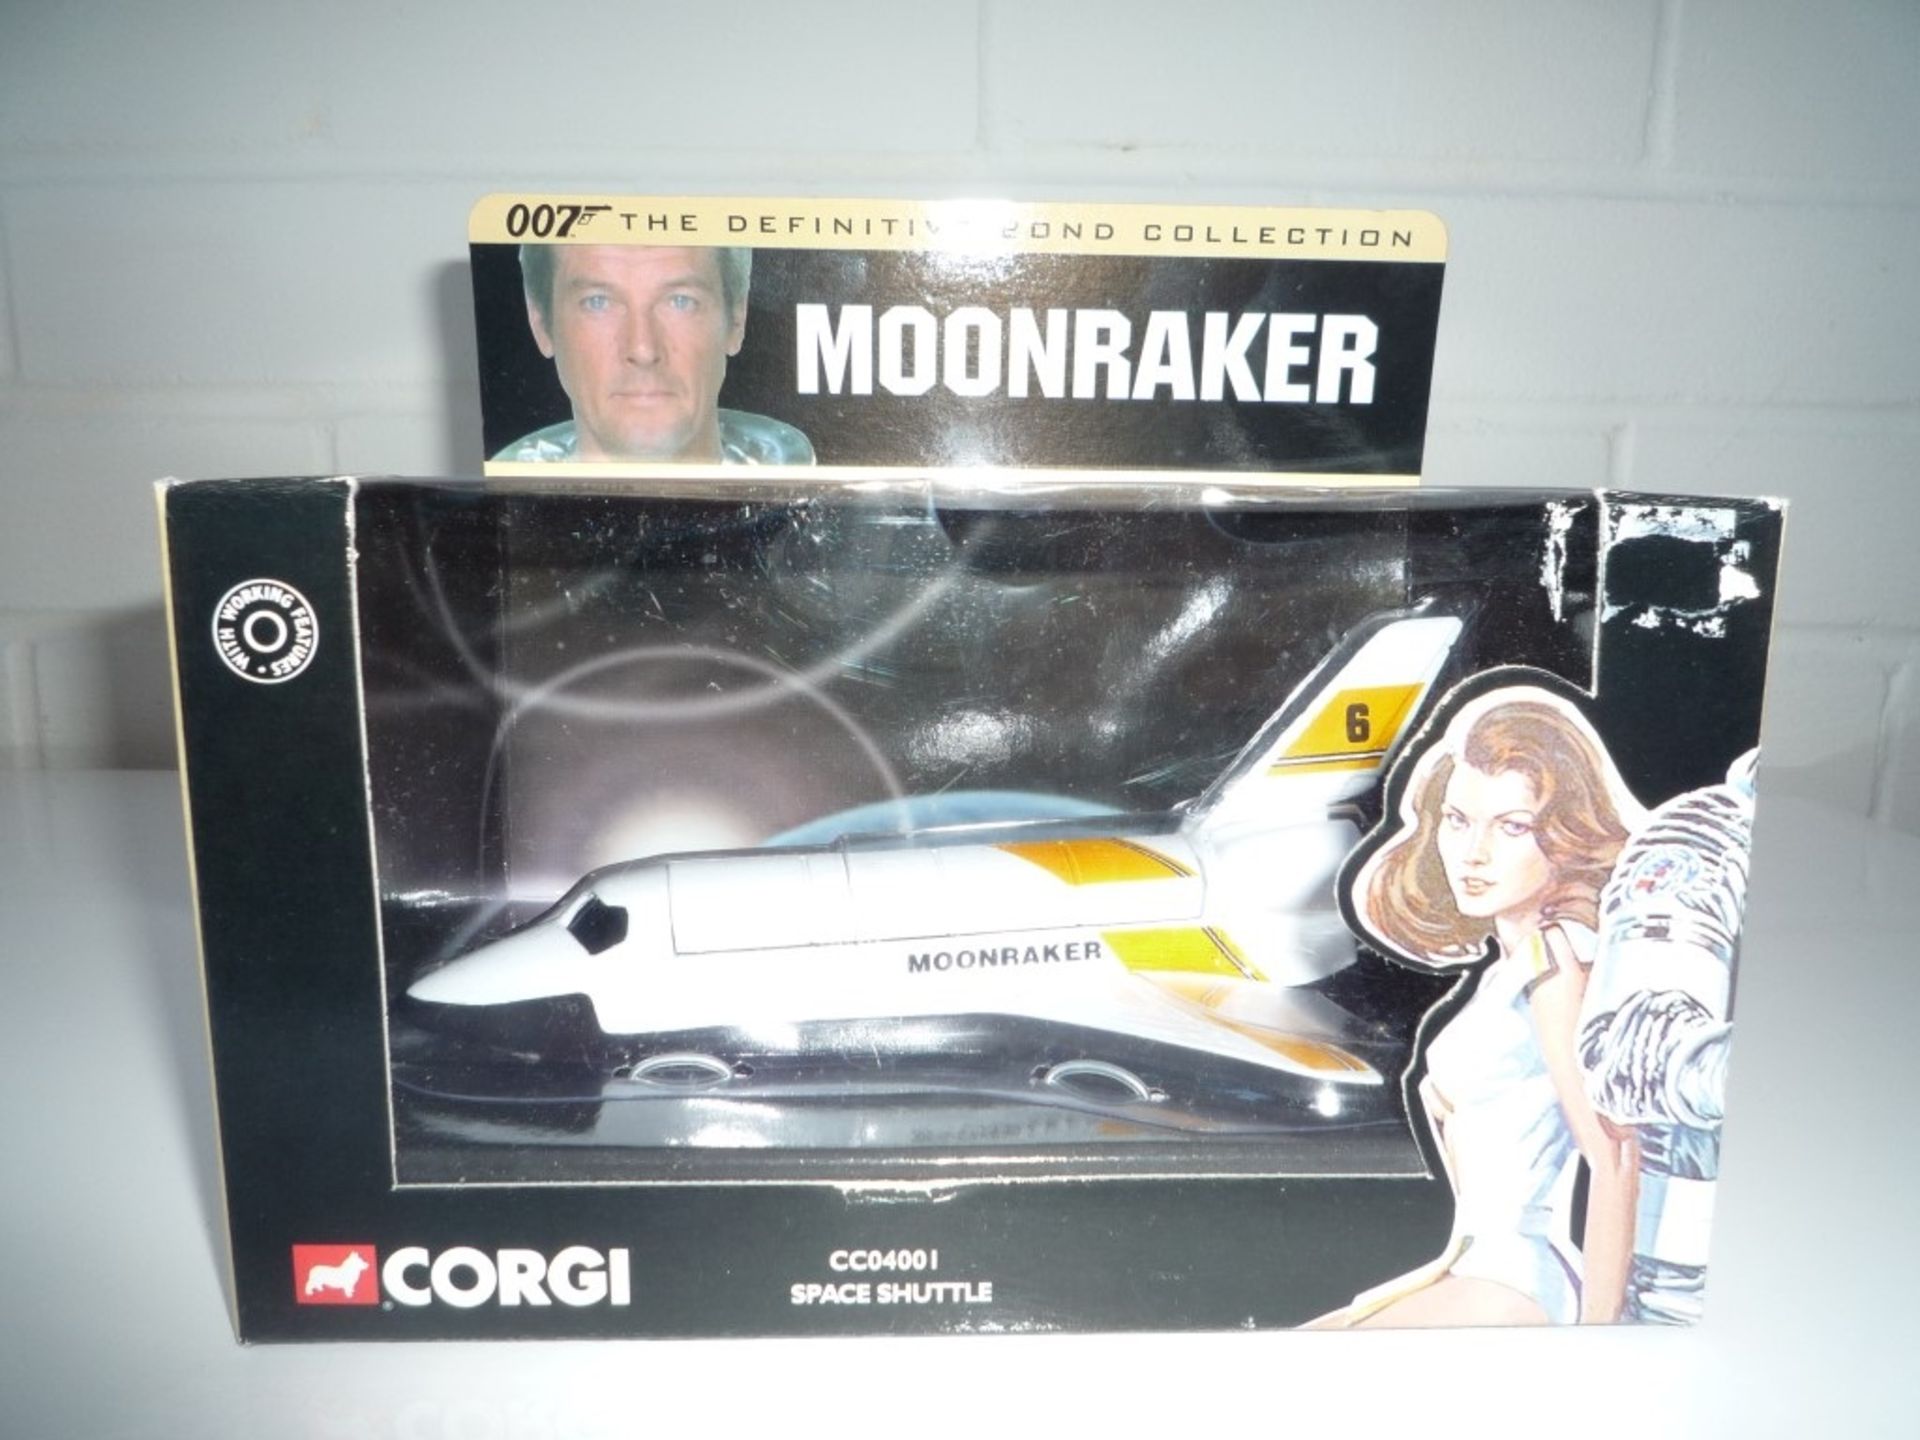 James Bond Moonraker Space Shuttle model - Image 2 of 2